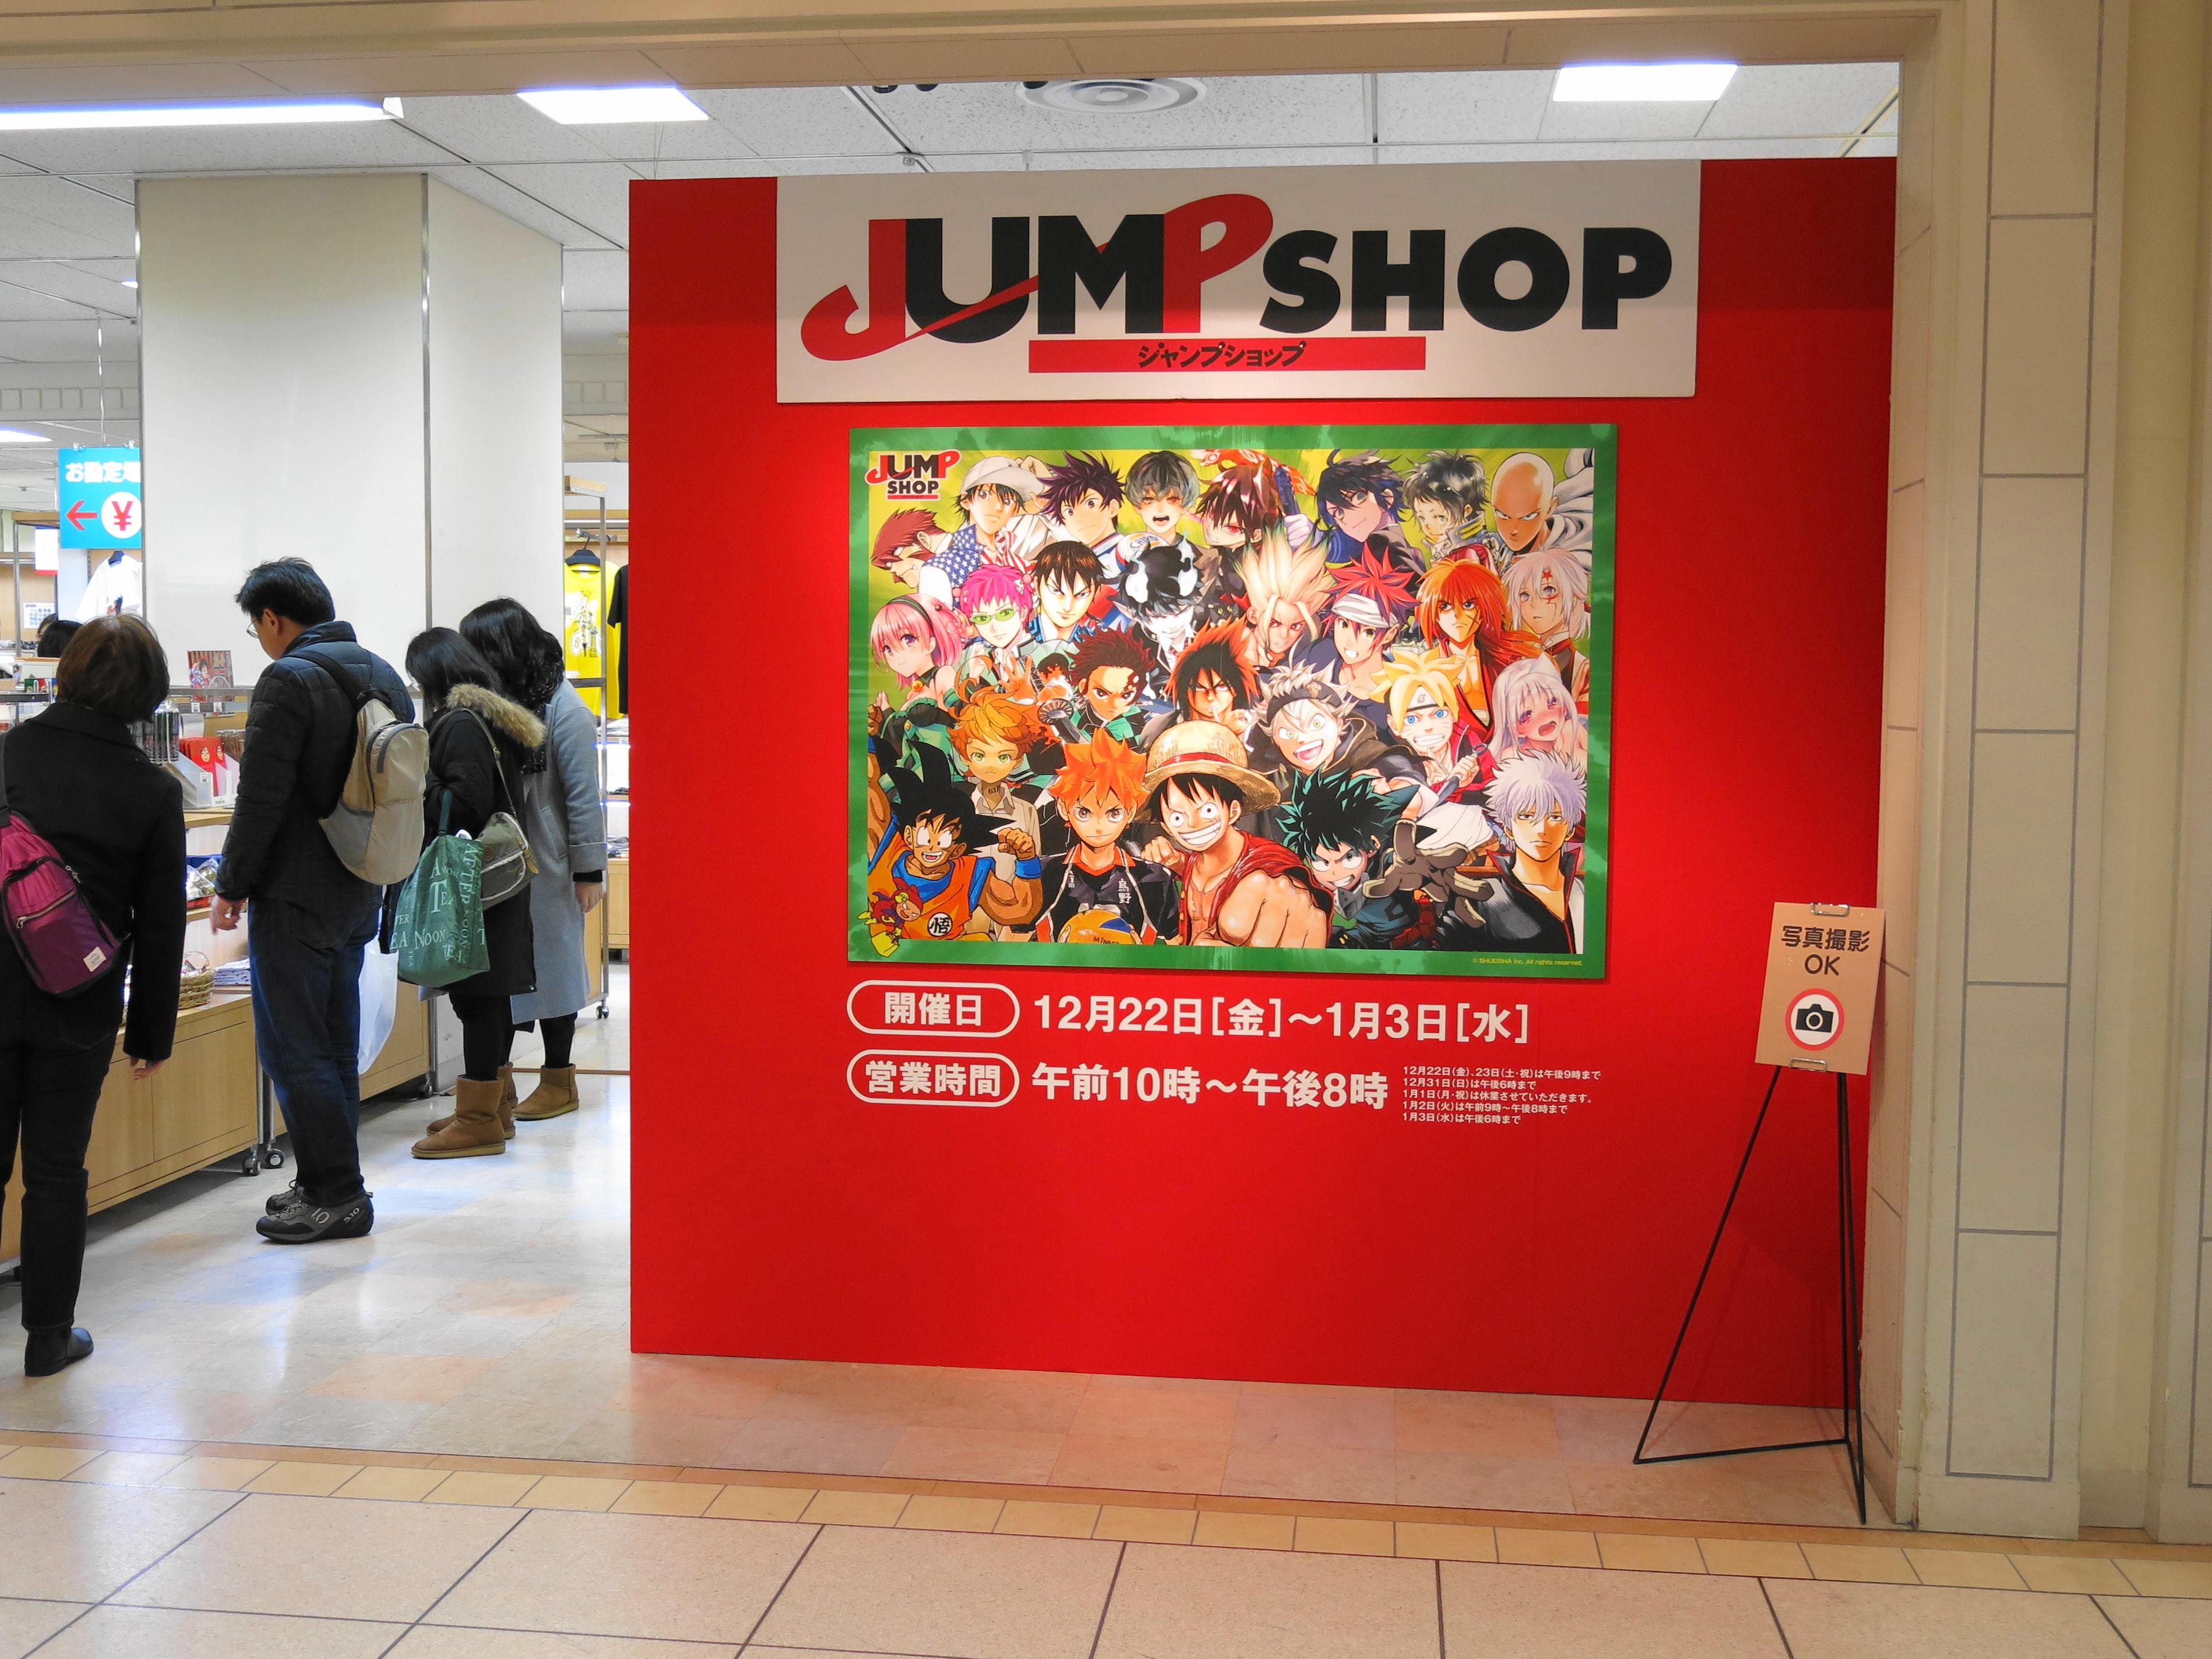 大丸札幌店でジャンプショップ開店中 小樽のコミュニティラジオ Fmおたる公式hp